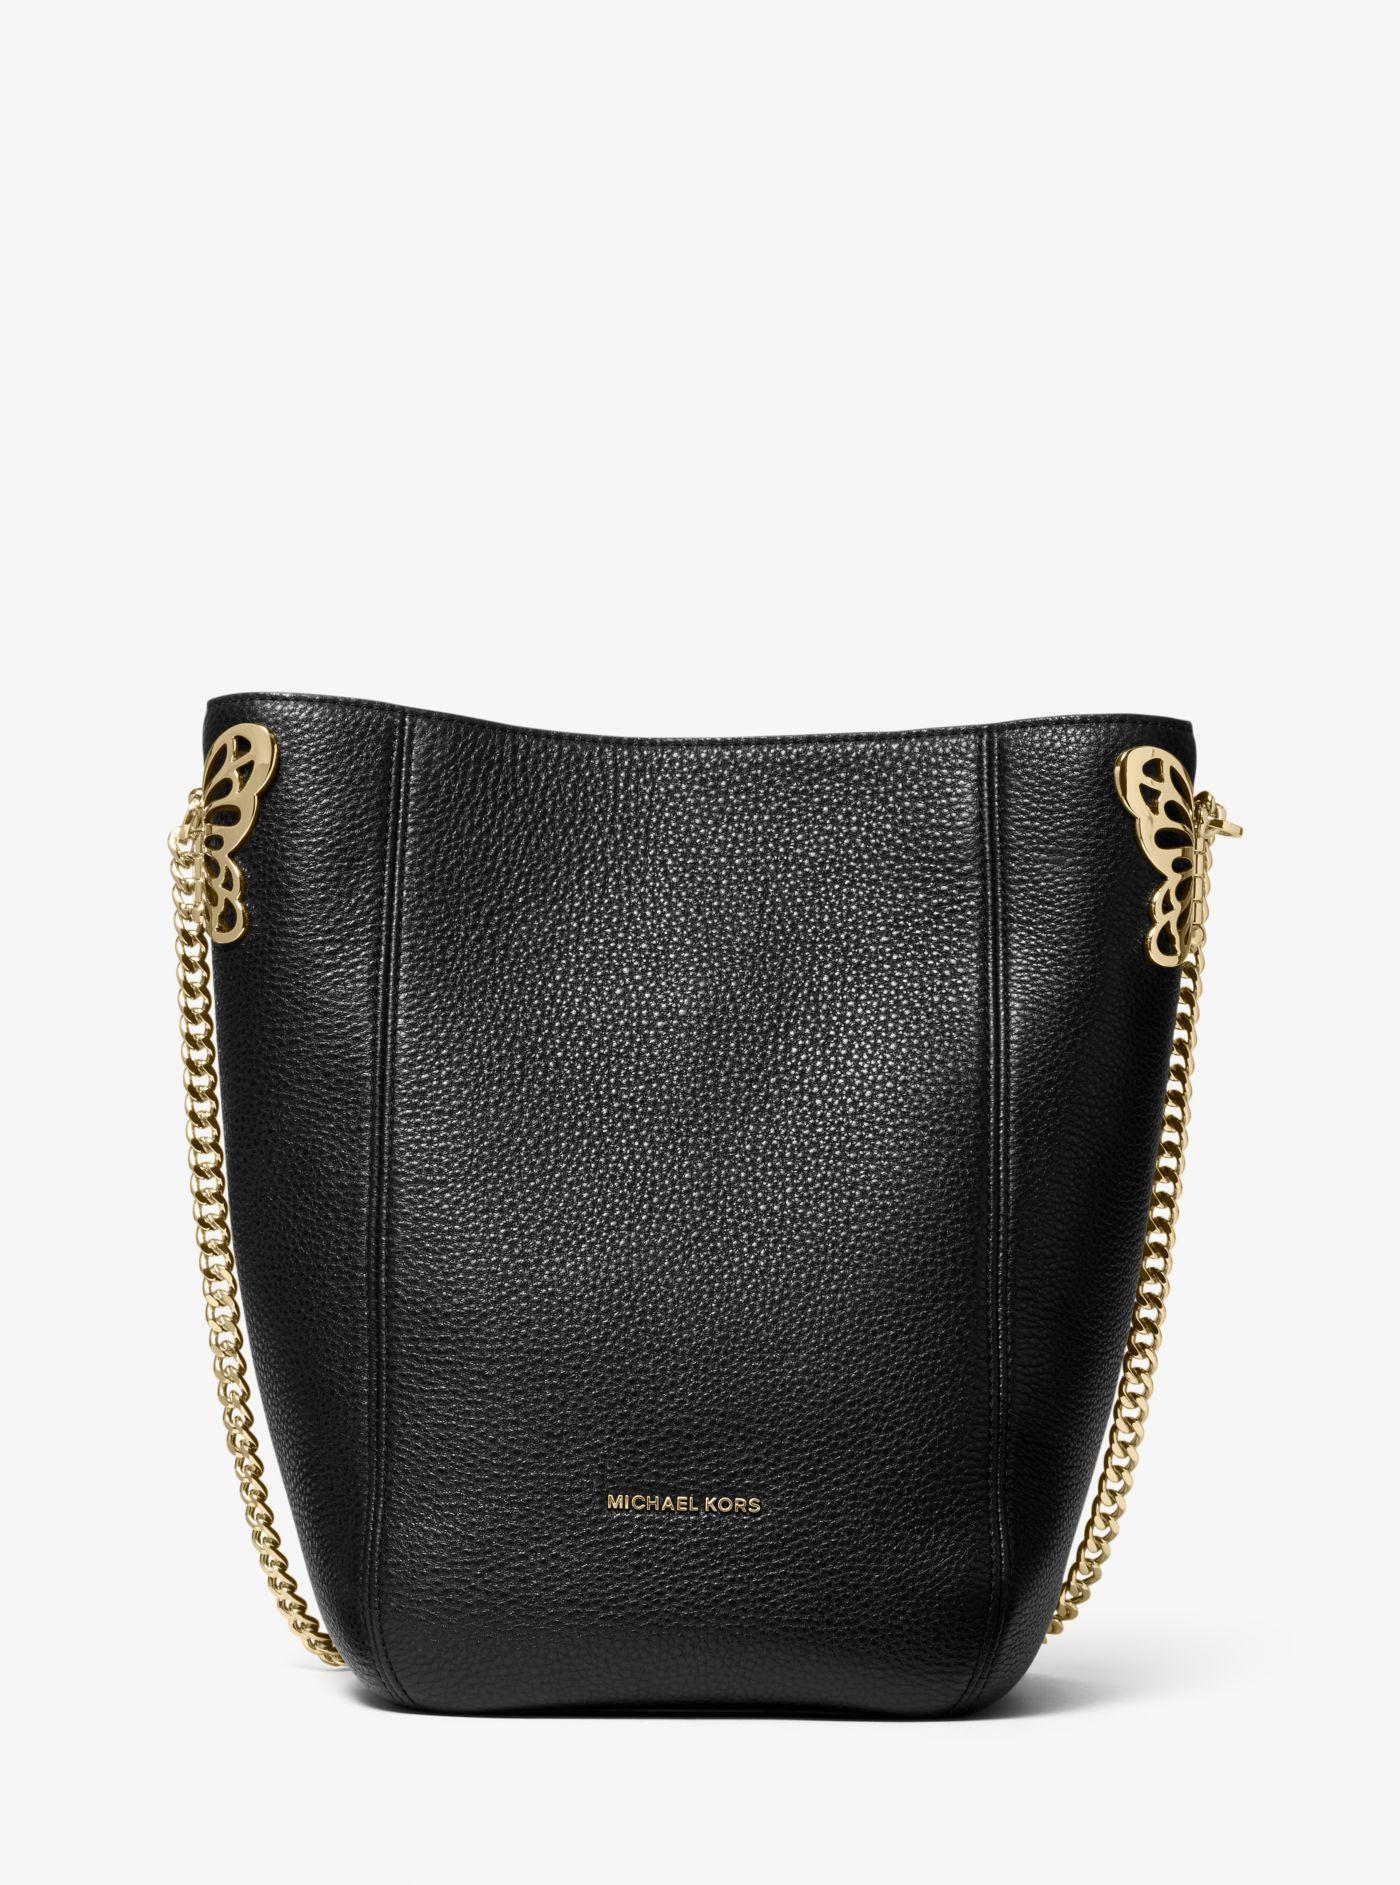 Lyst - Michael Kors Brooke Medium Embellished Pebbled Leather Shoulder Bag in Black